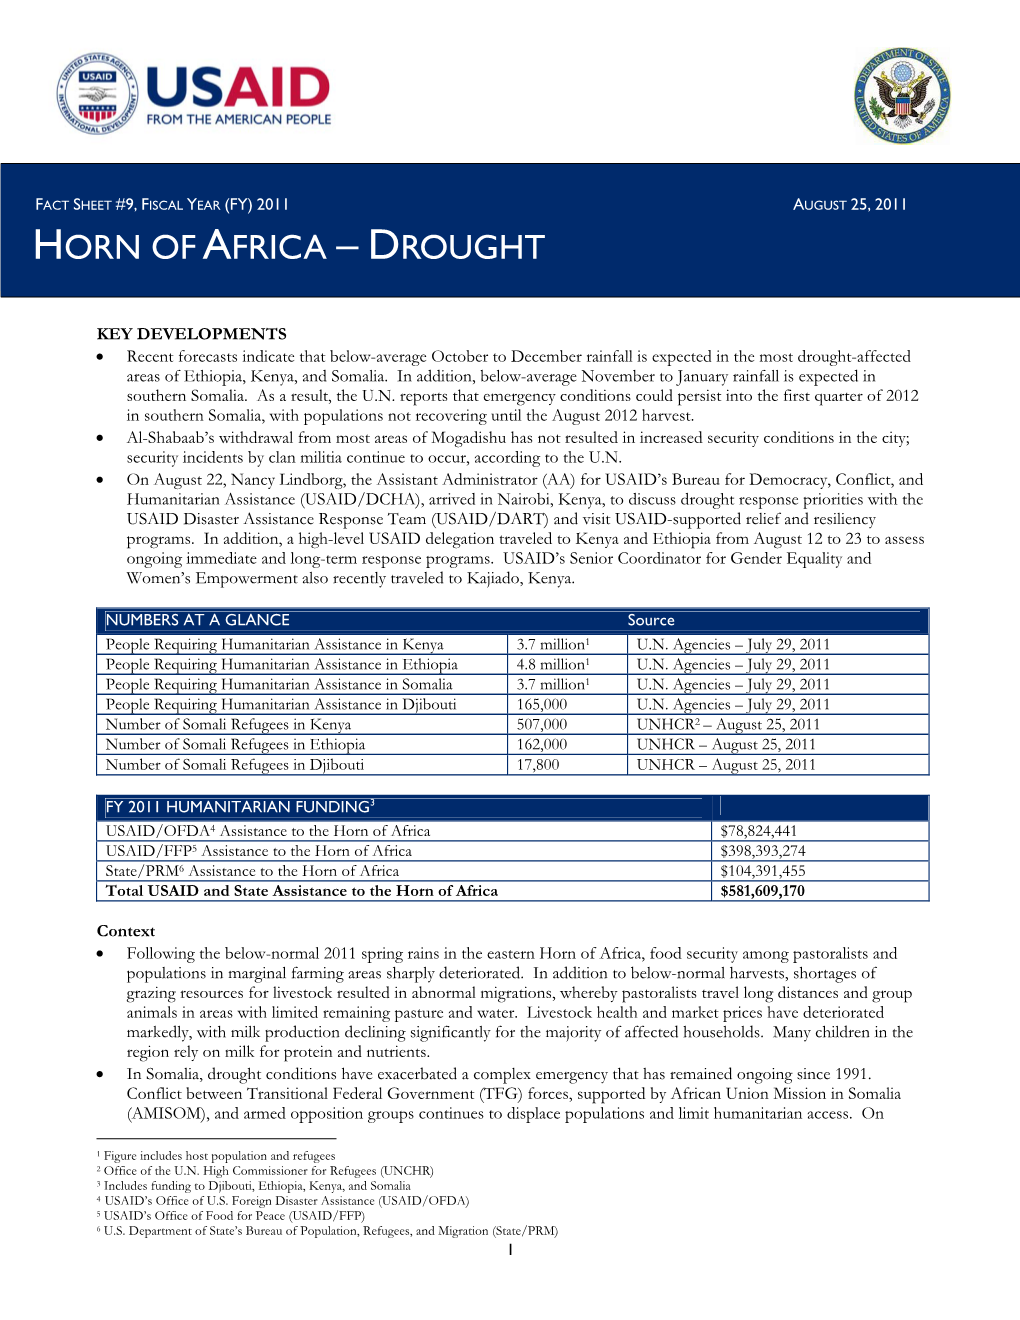 USG Horn of Africa Drought Fact Sheet #9